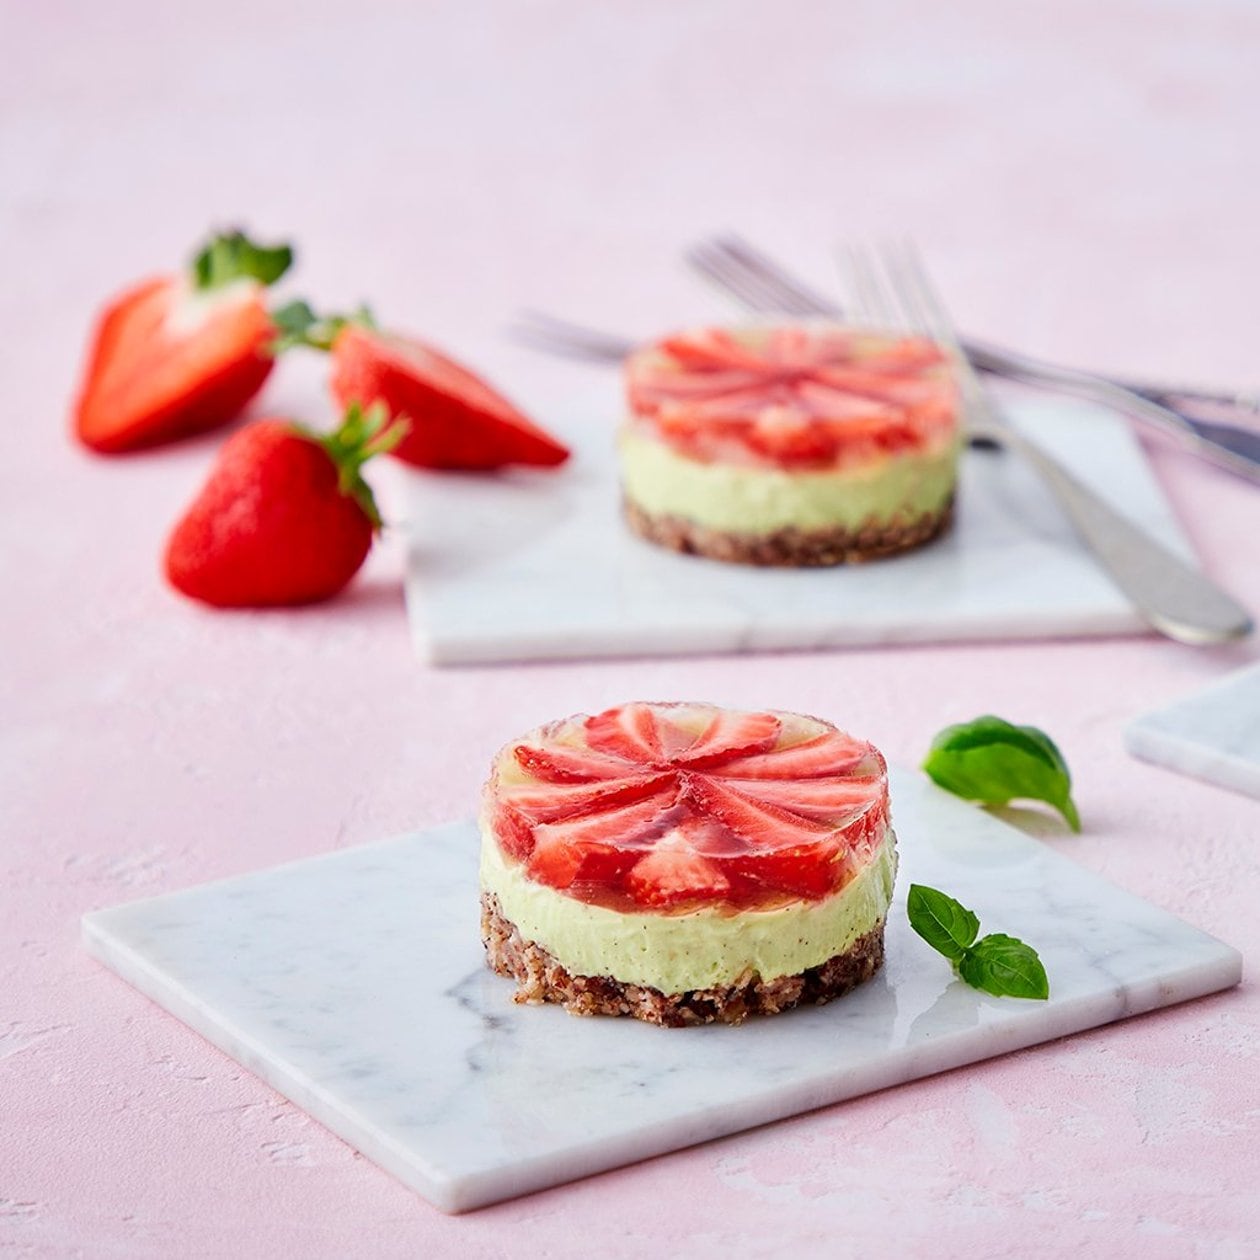 Frø- og nøttecrunch med basilikumkrem, jordbær og lakrisgele – - Oppskrift